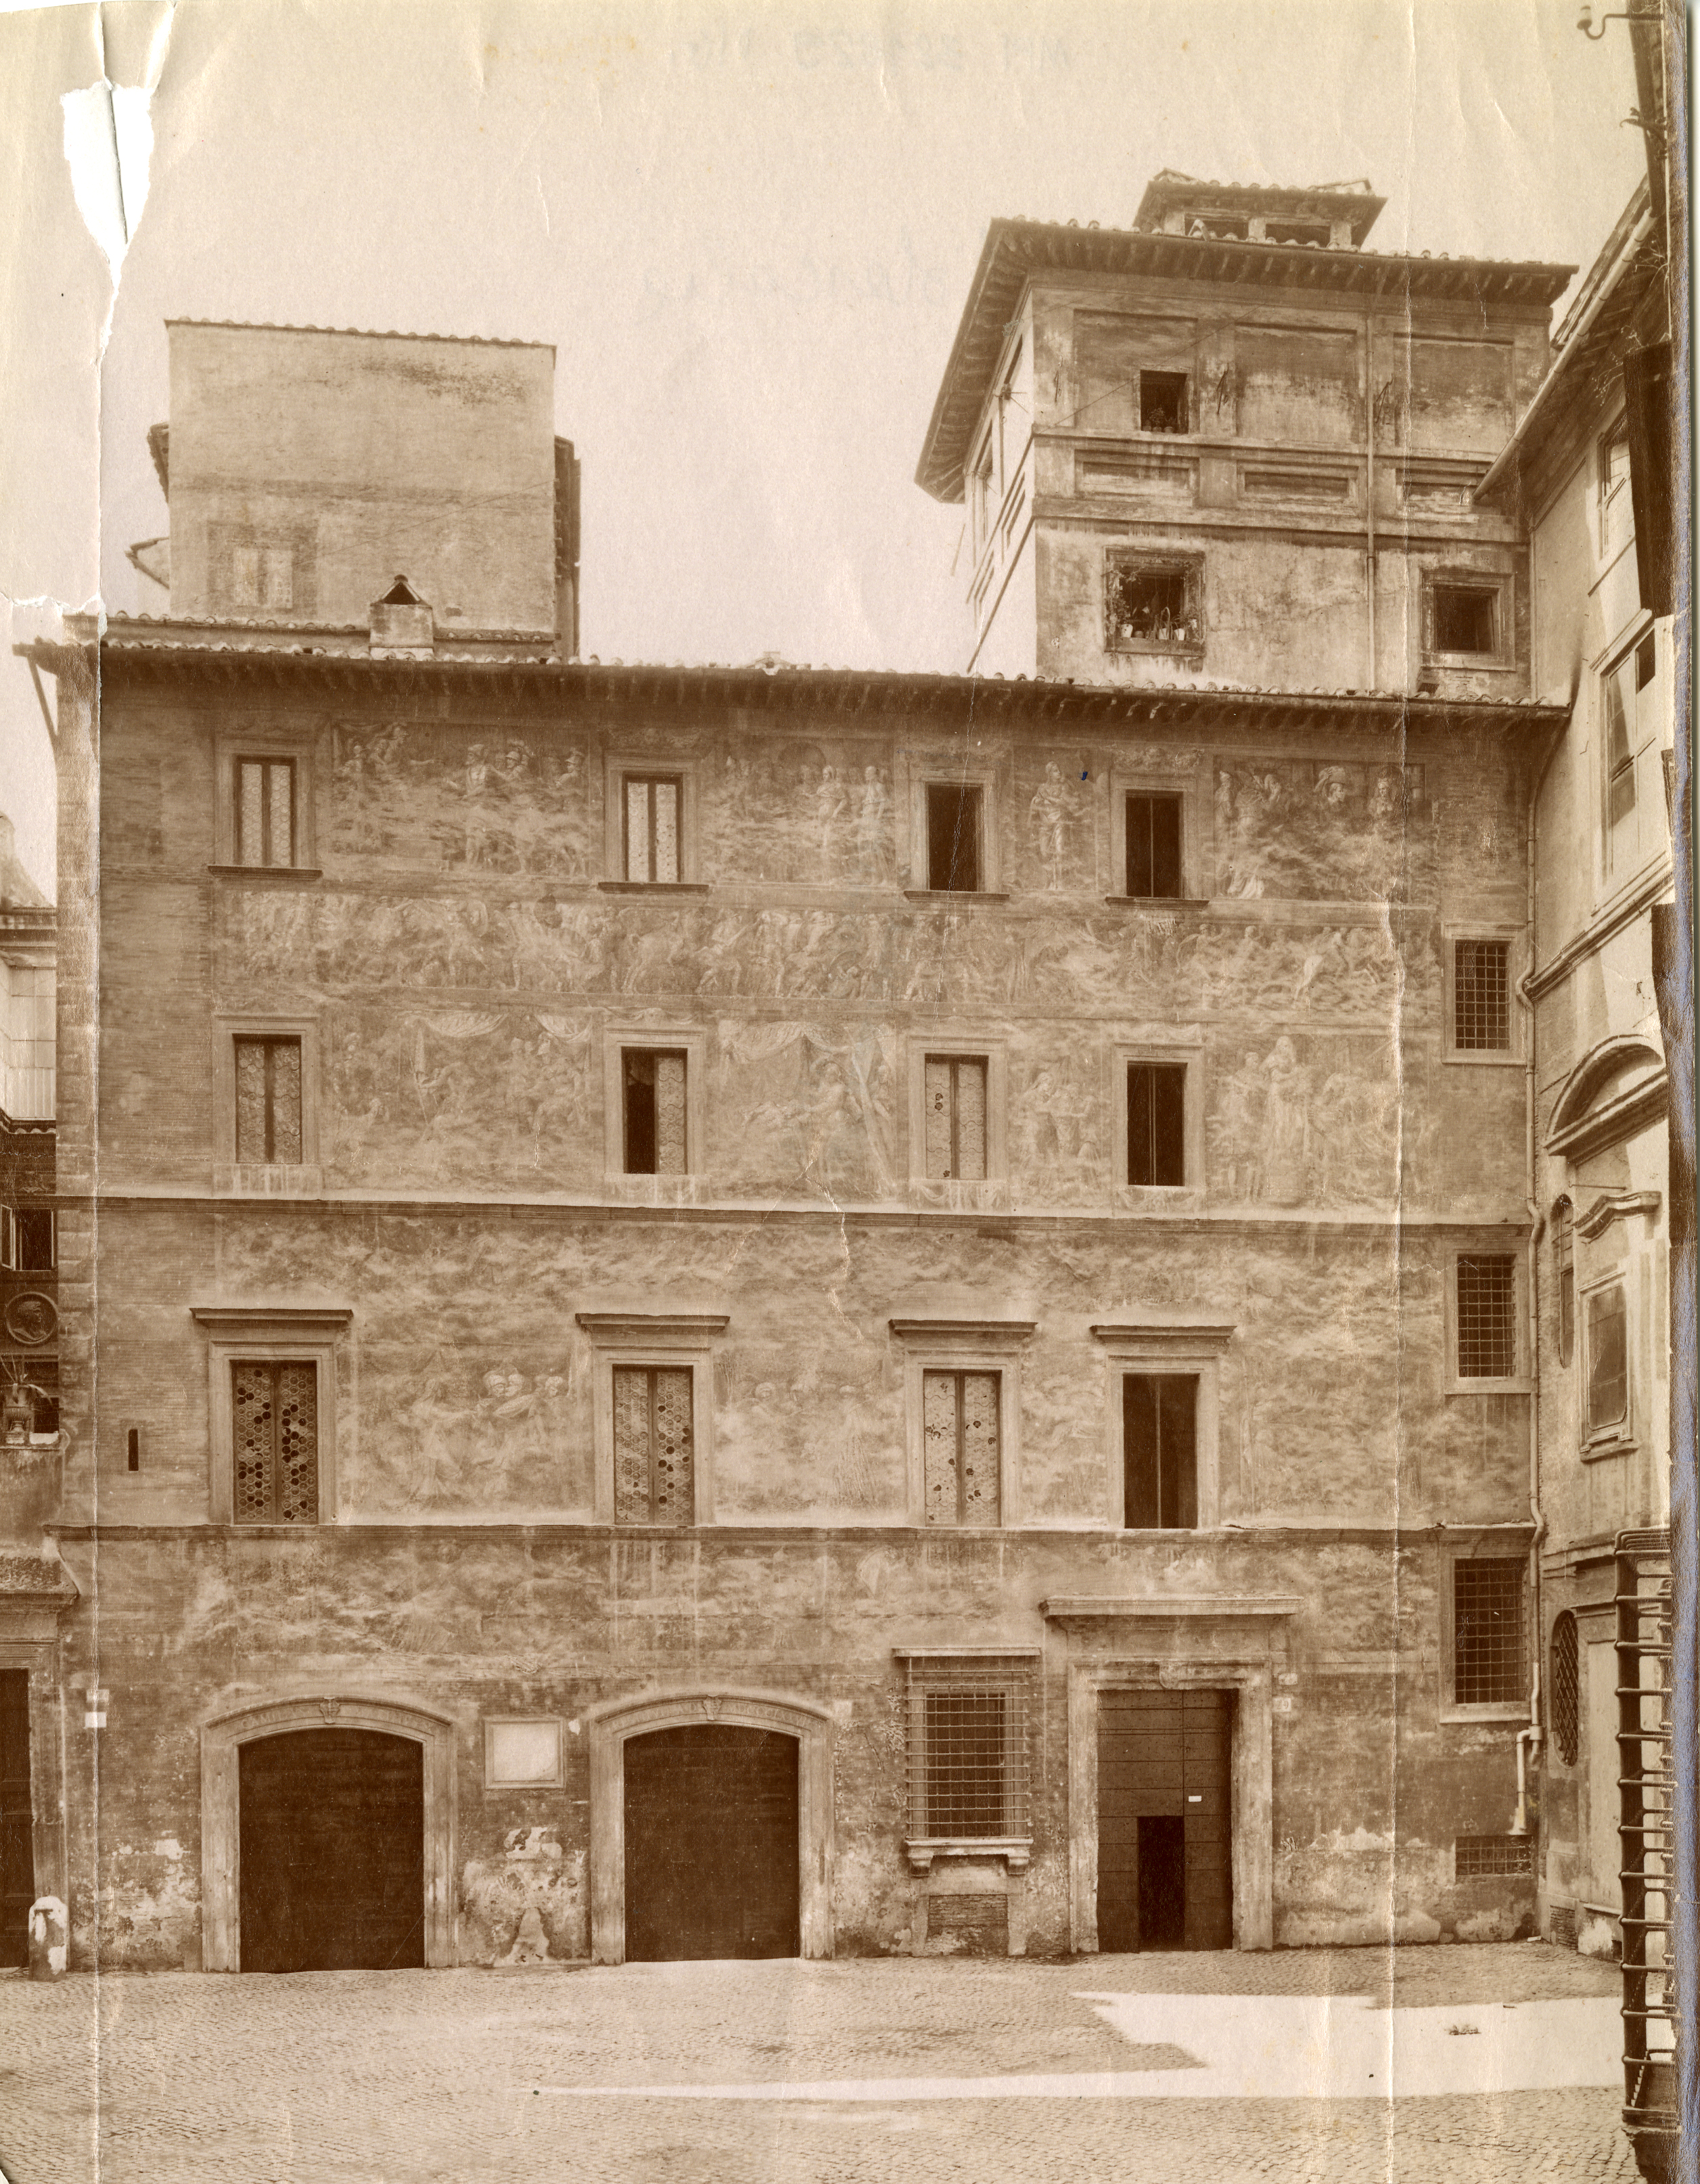 Fotografie eines römischen Palazzos. Die Fassade ist mit Fresken versehen, 